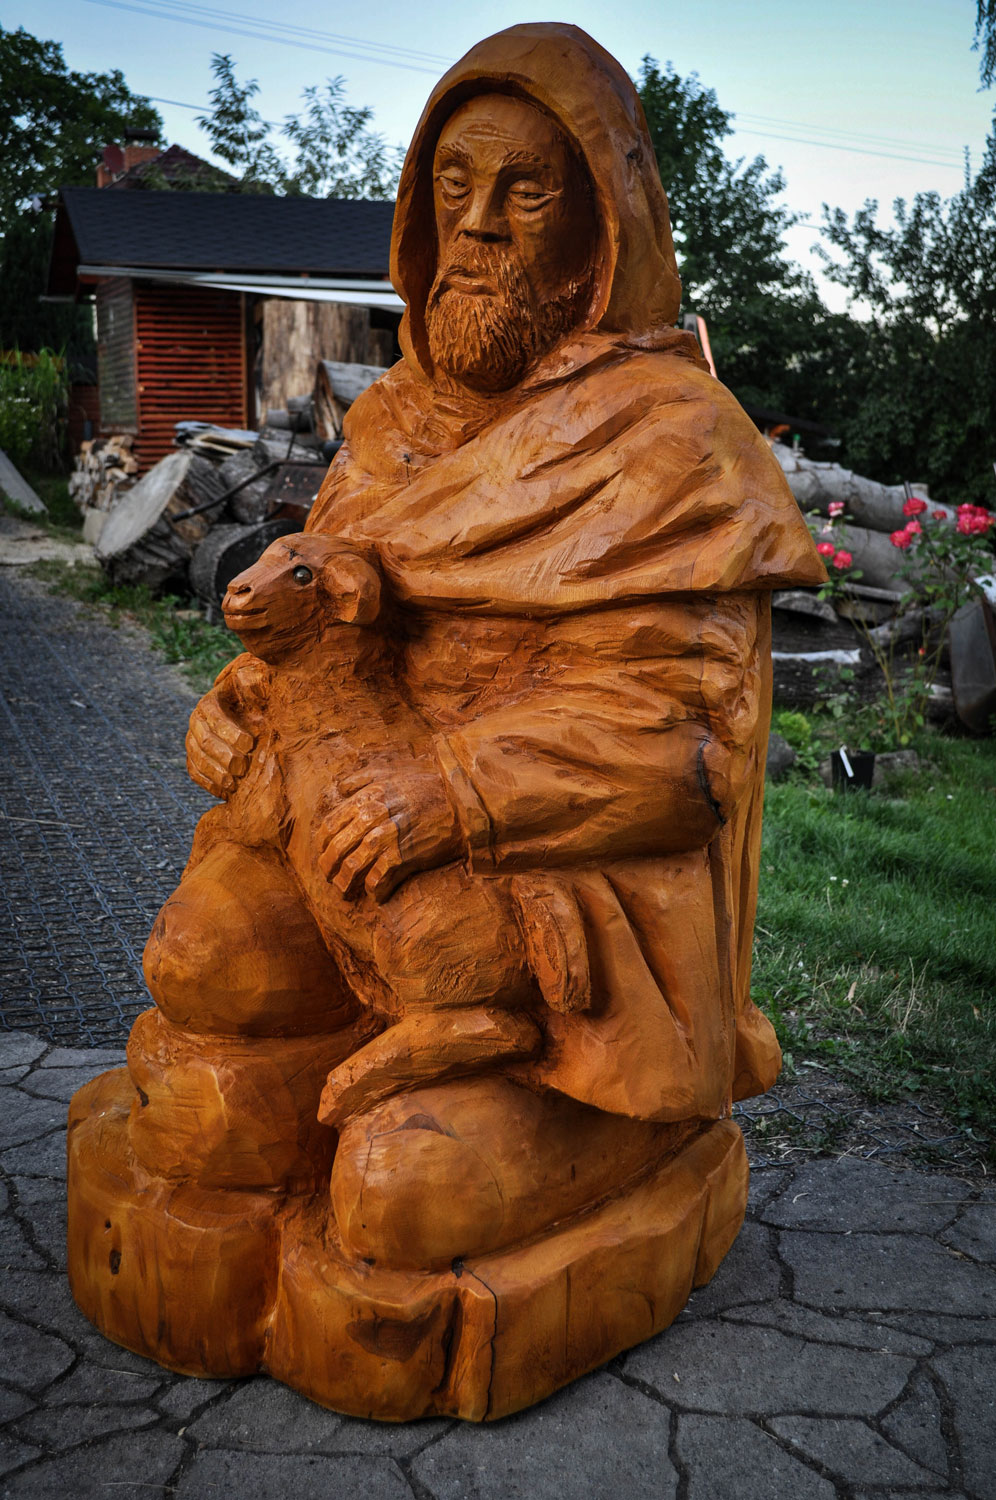 drevorezba-vyrezavani-carving-wood-drevo-socha-figura-betlem_pastyr-radekzdrazil-20220815-02